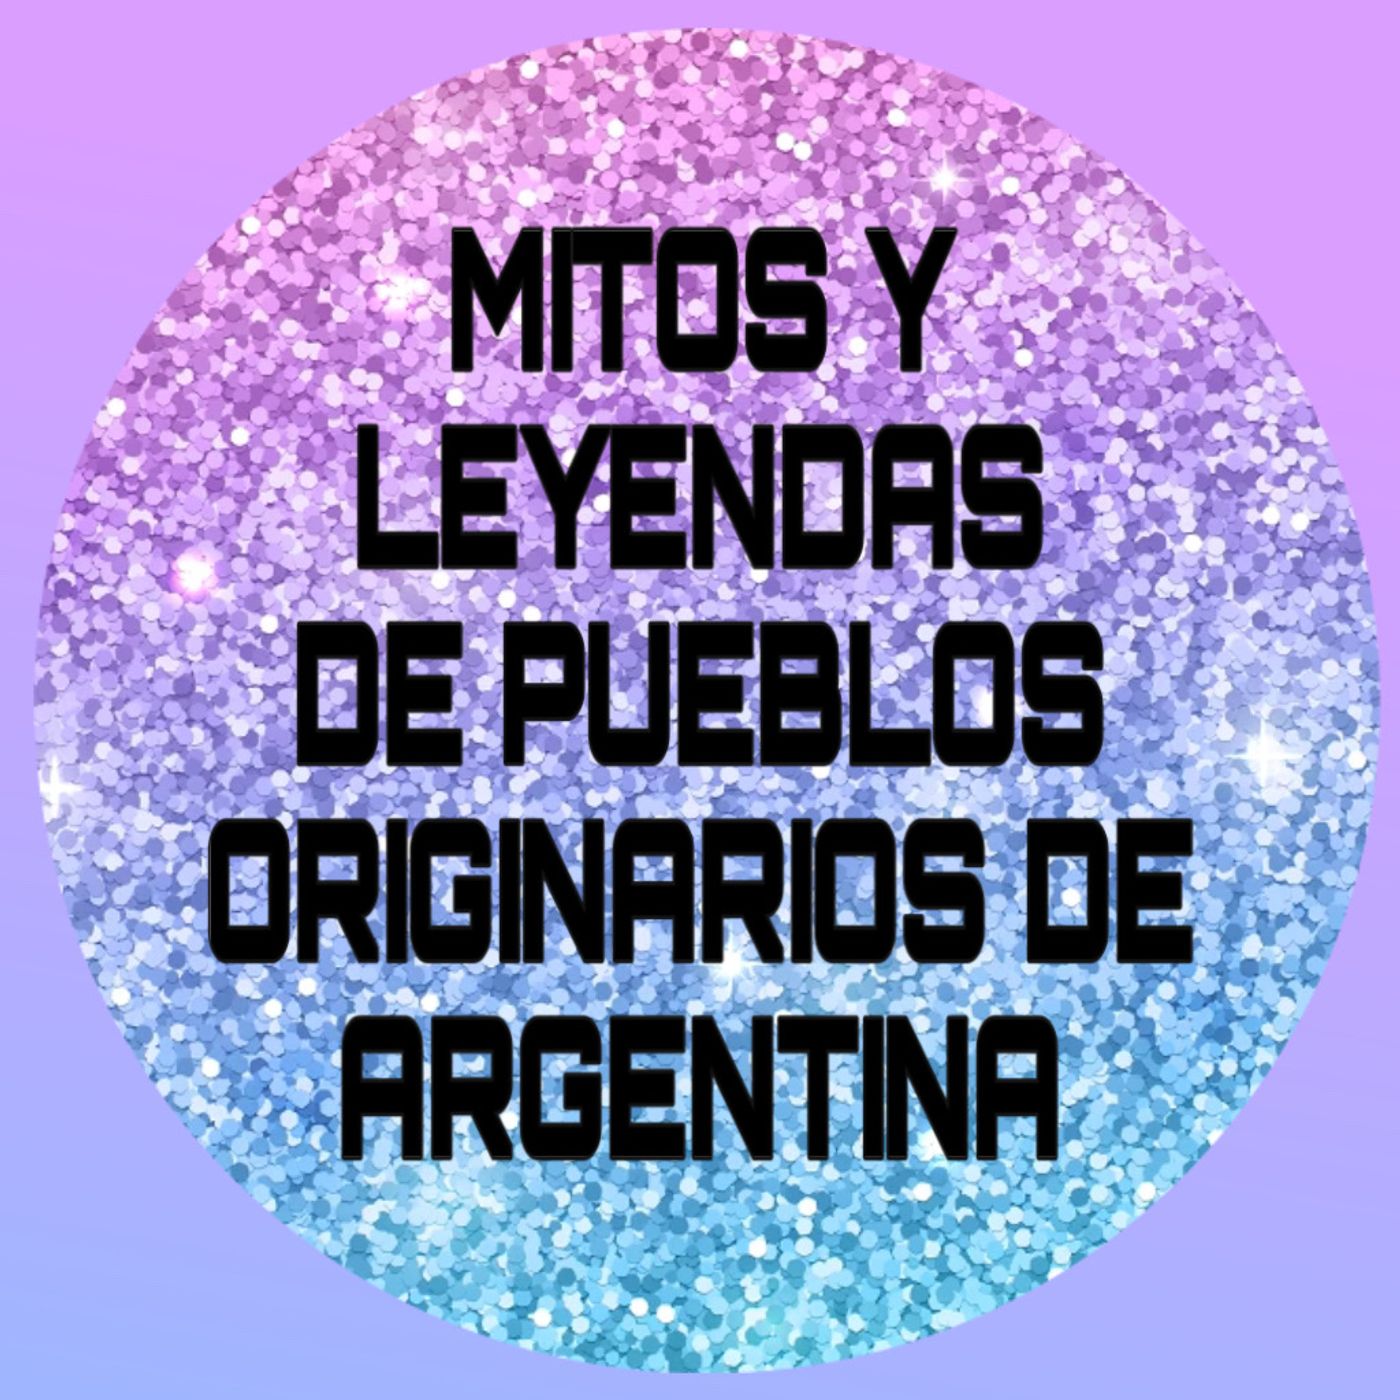 Leyendas y mitos de pueblos originarios de Argentina